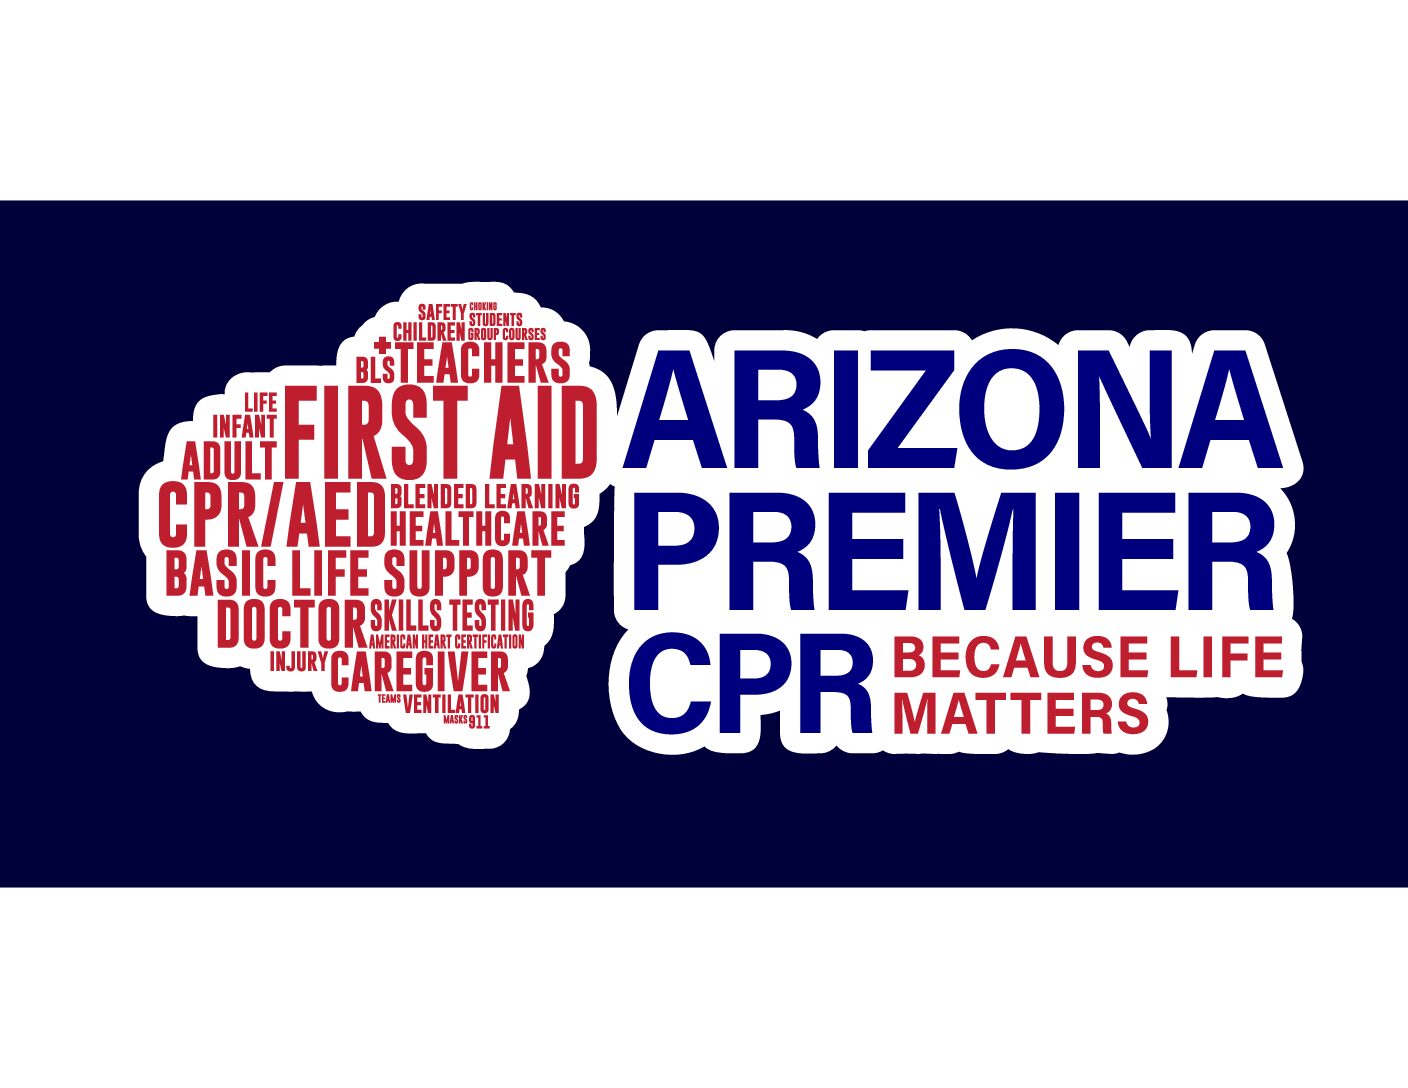 Arizona Premier CPR